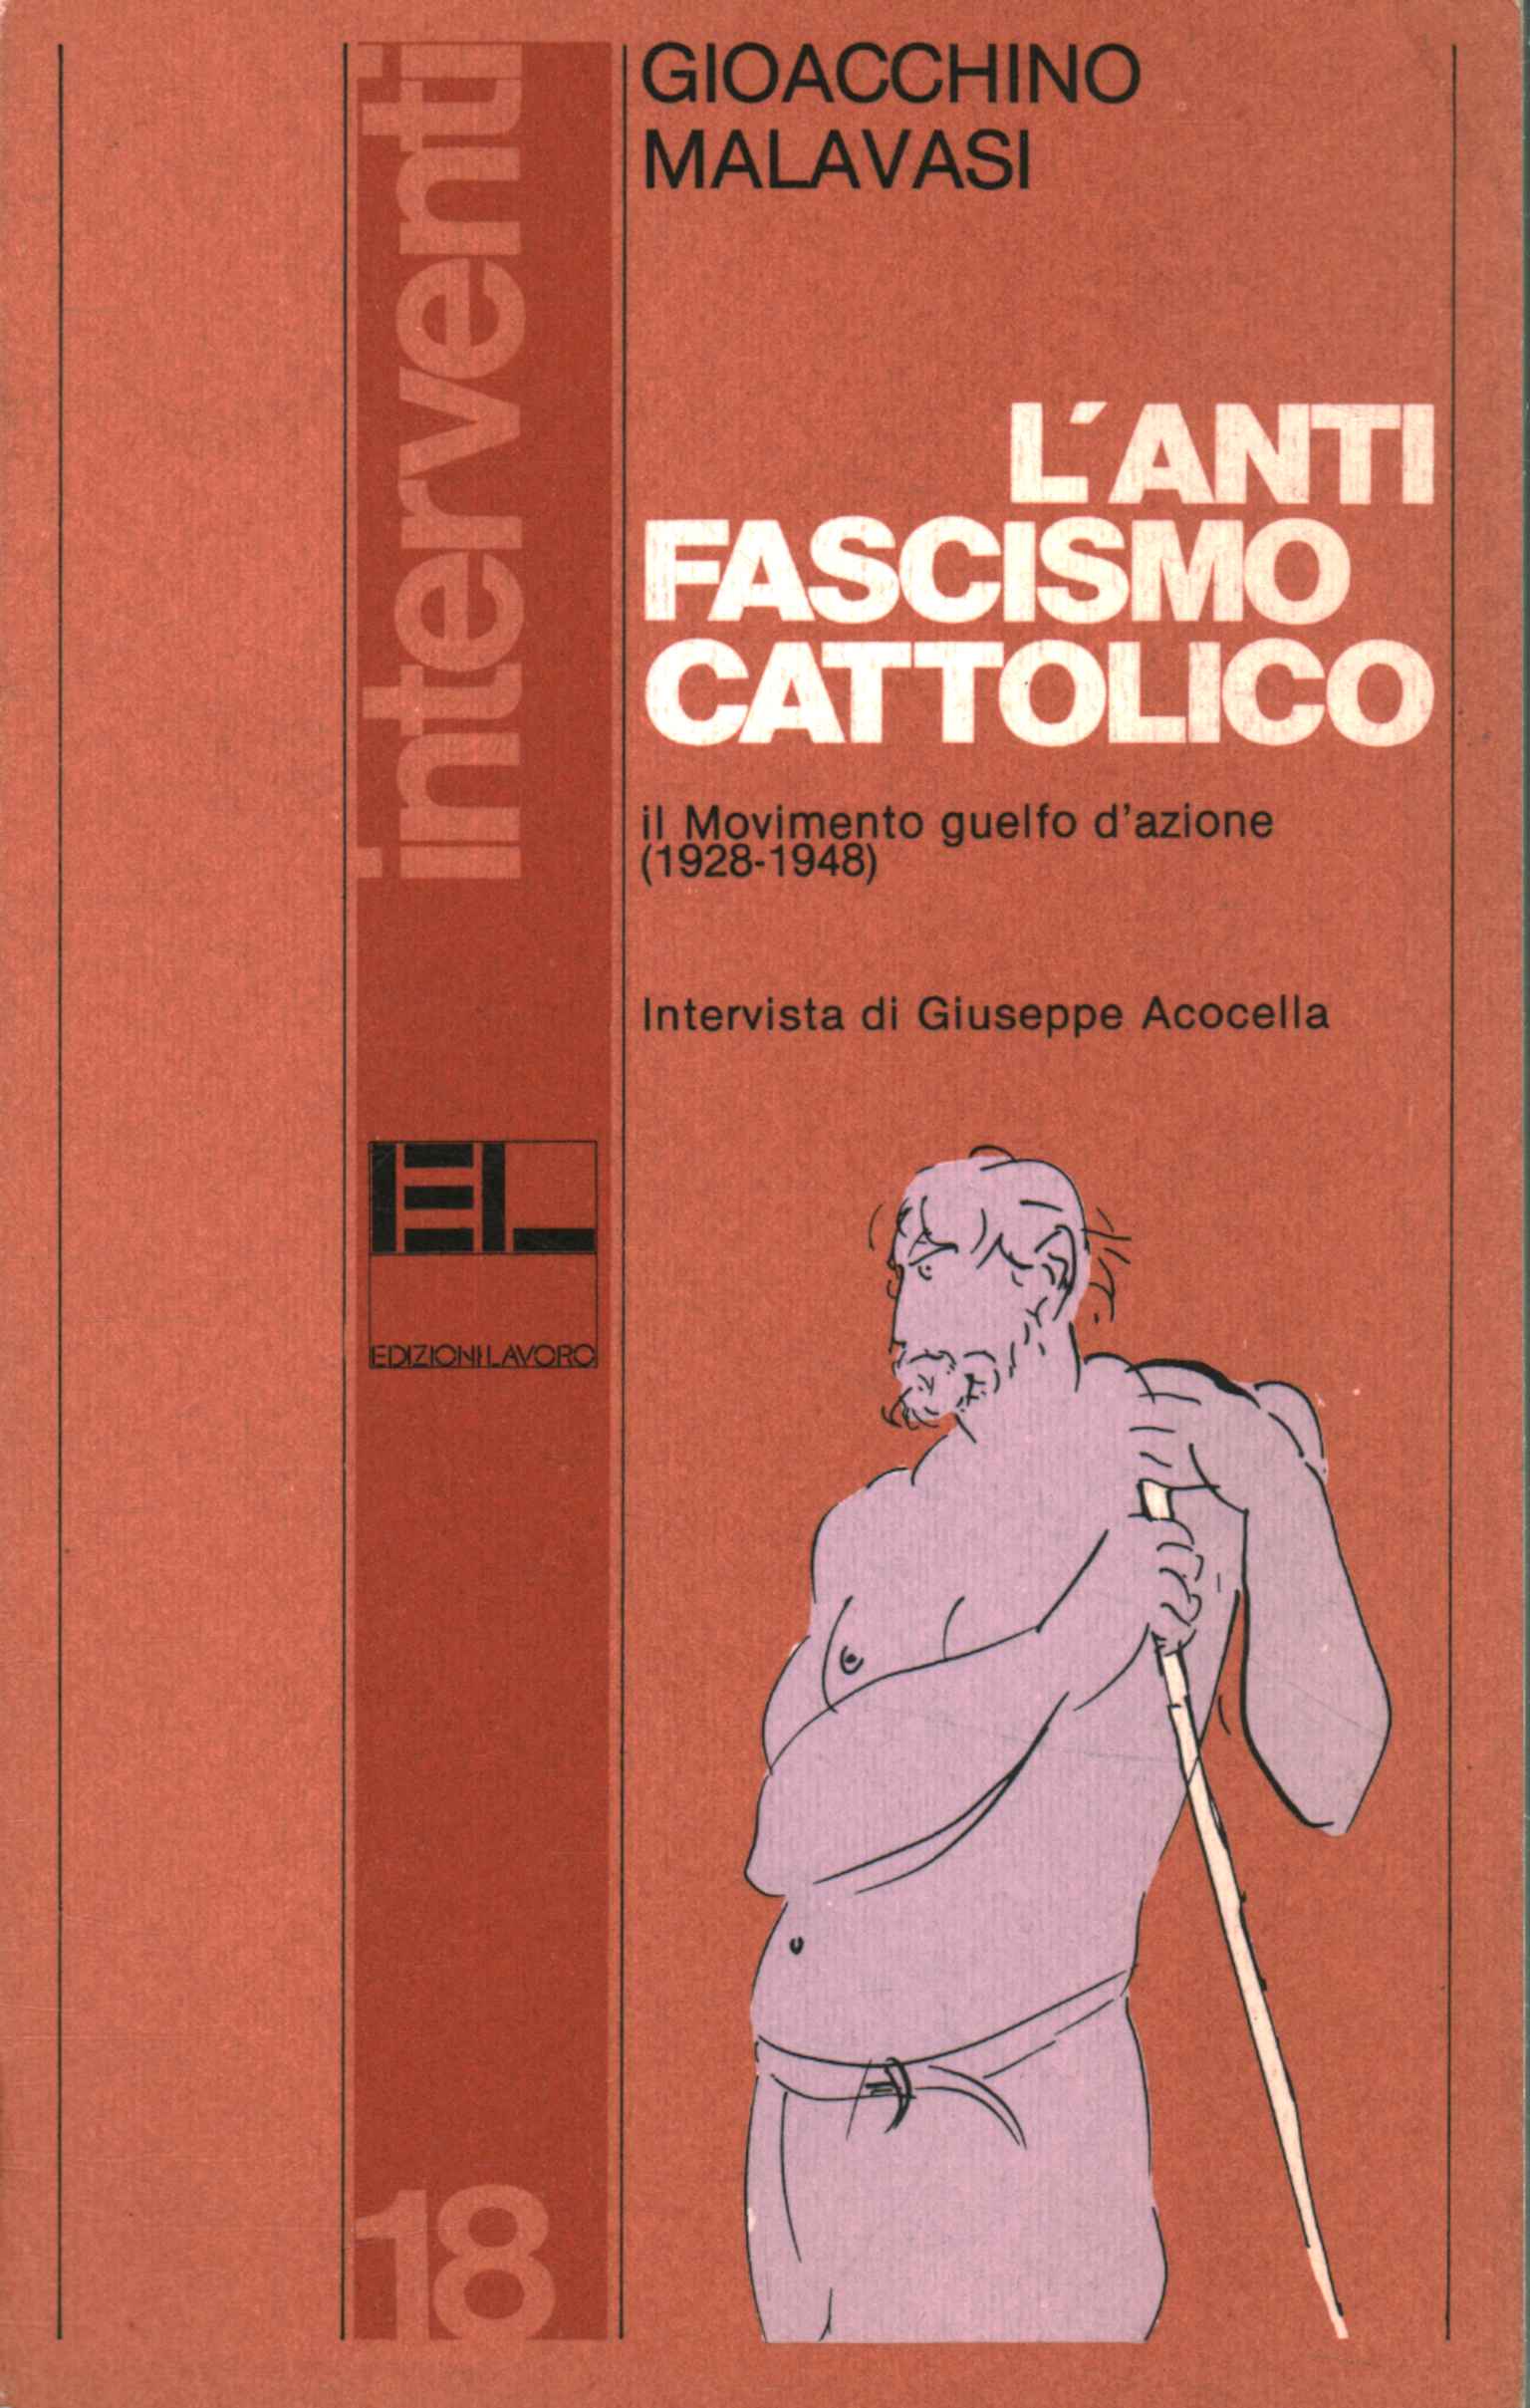 Antifascisme catholique